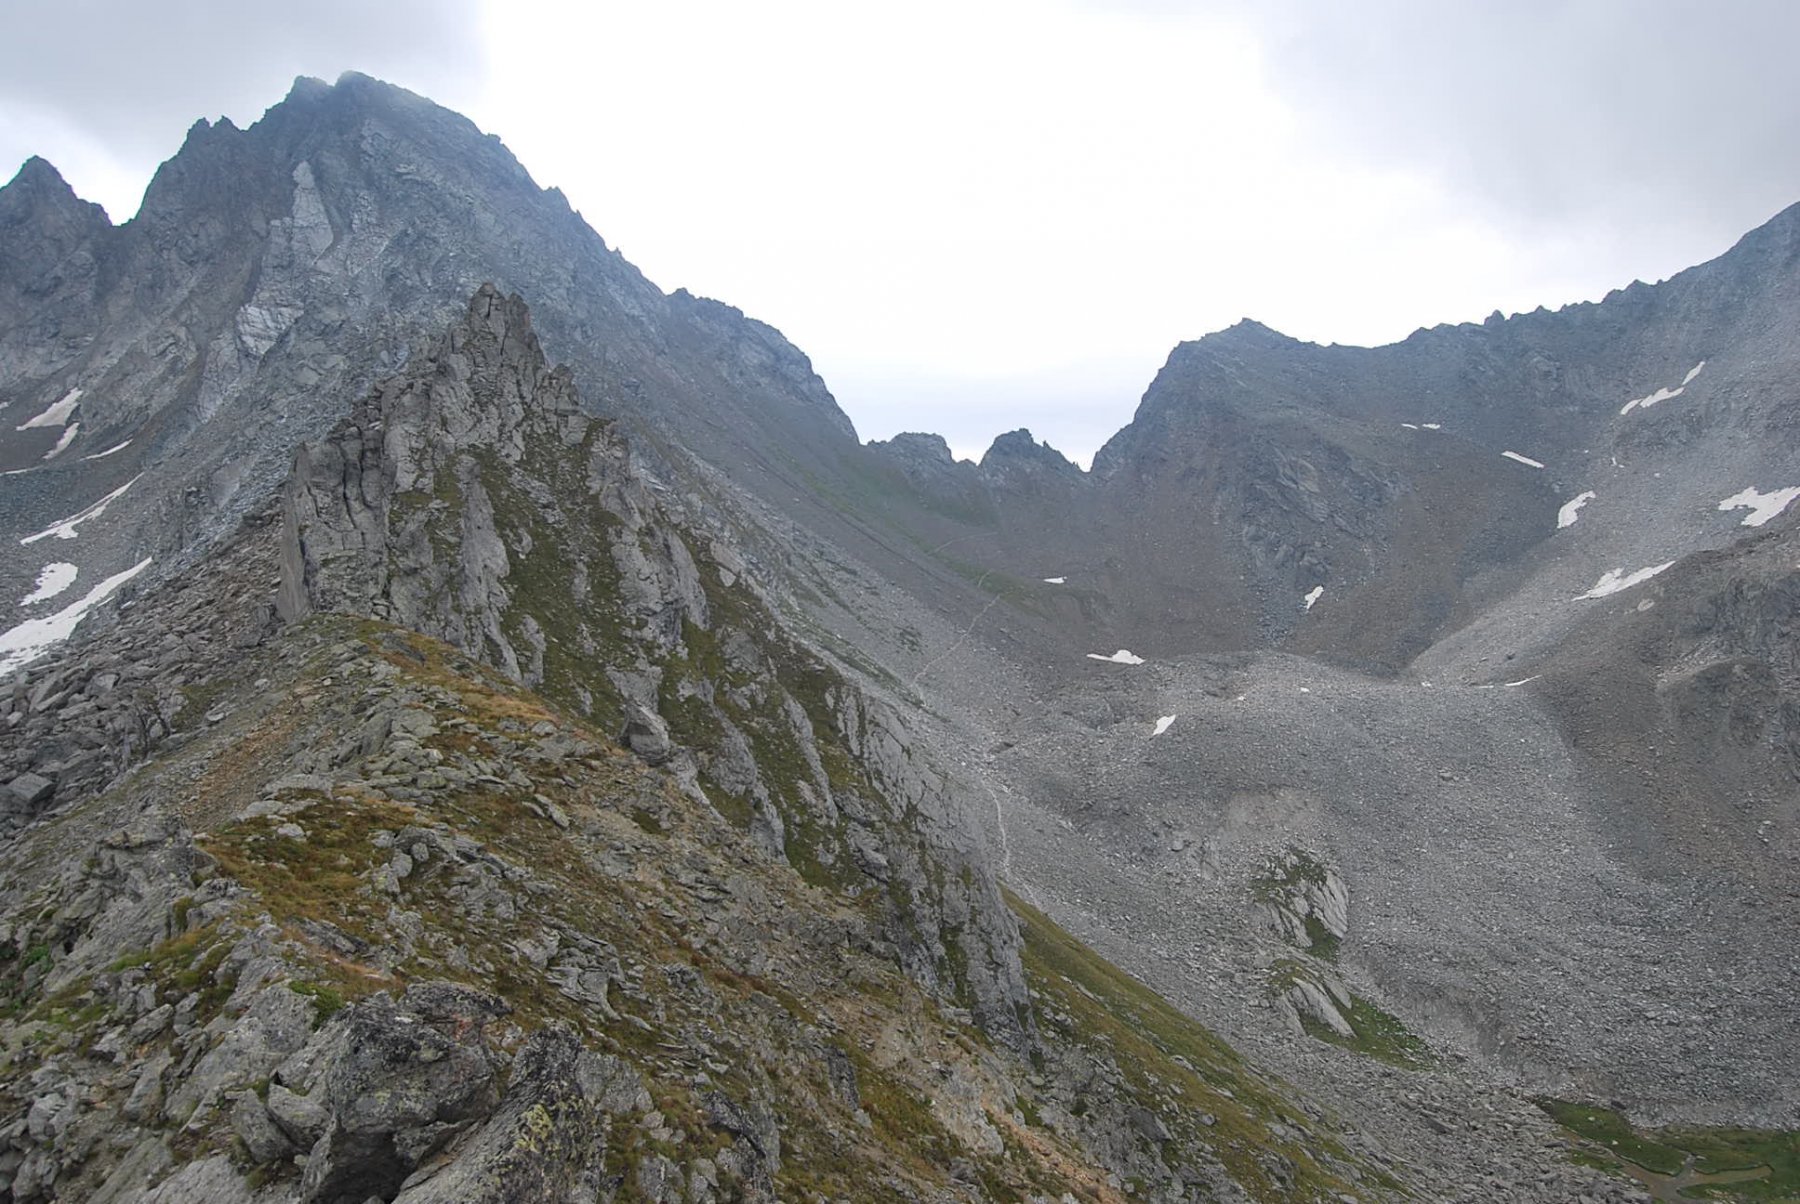 La roccia a due punte, il sentiero ed il Colle Finestra dalla cresta